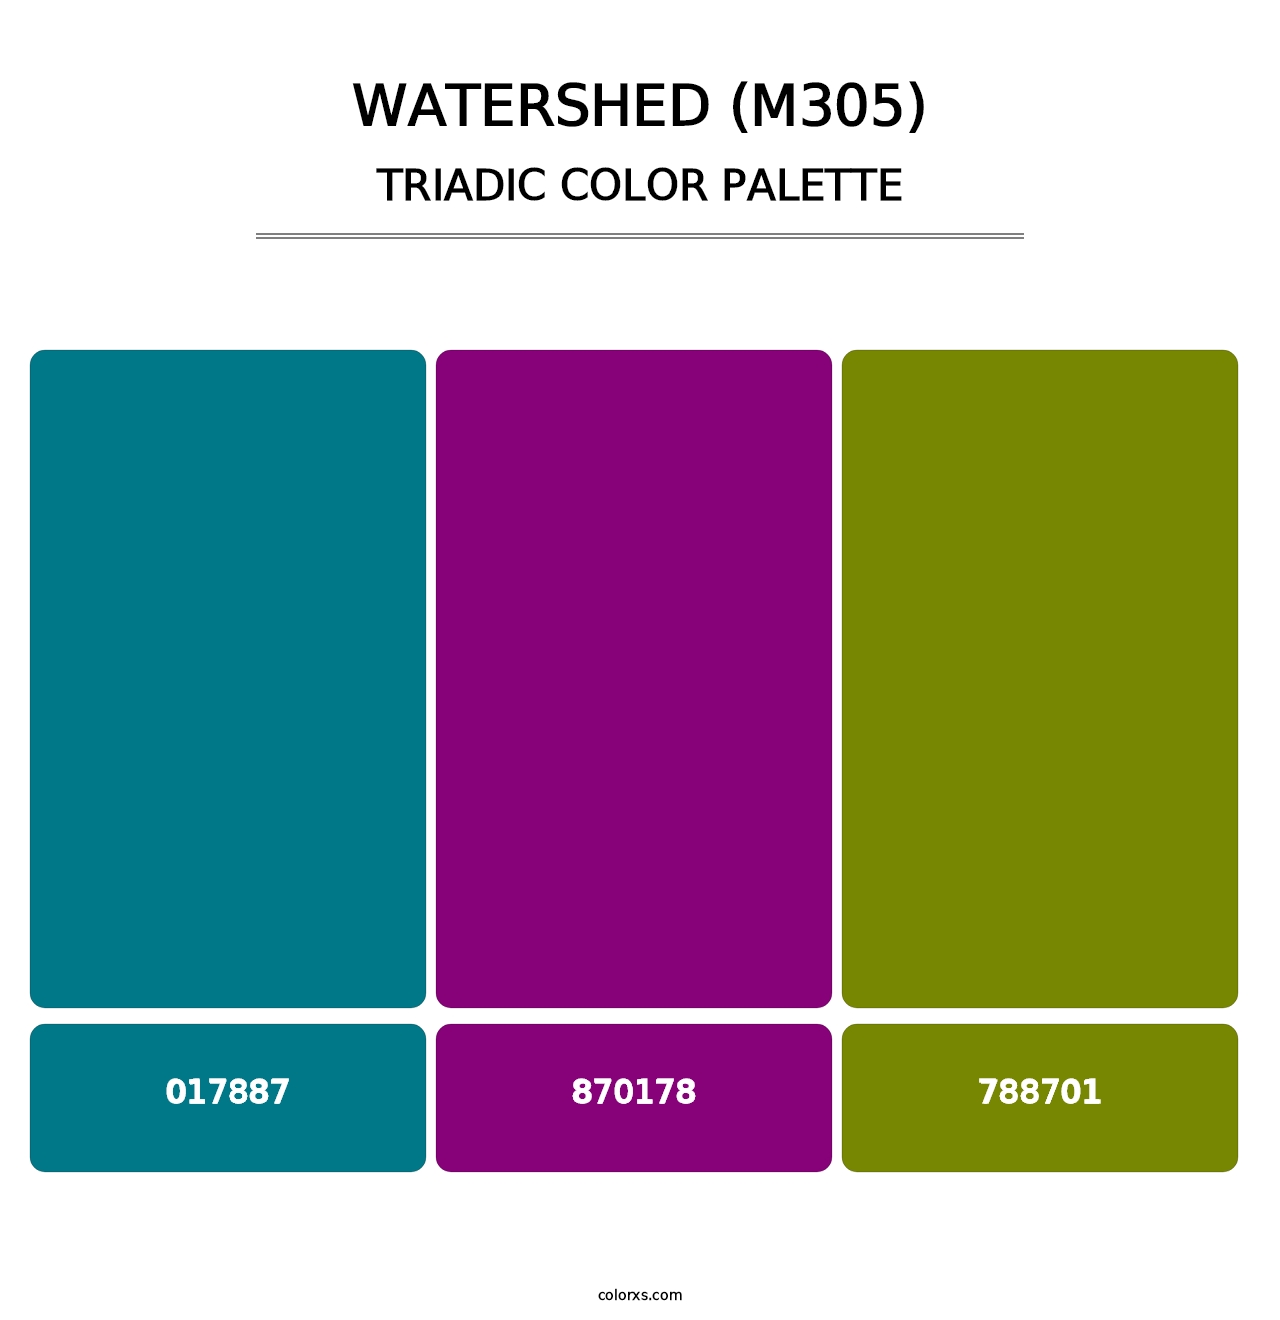 Watershed (M305) - Triadic Color Palette